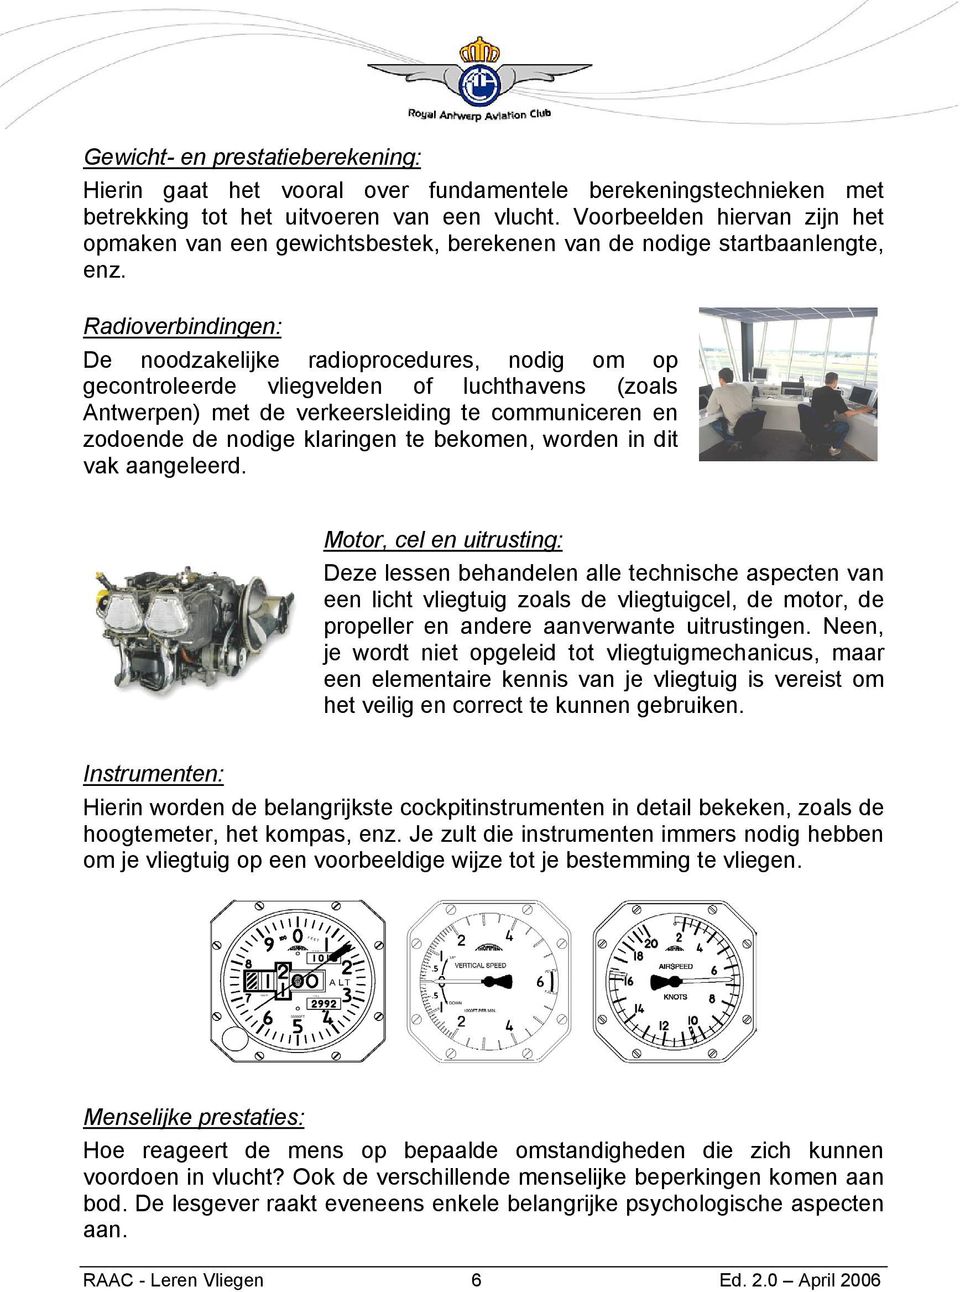 Radioverbindingen: De noodzakelijke radioprocedures, nodig om op gecontroleerde vliegvelden of luchthavens (zoals Antwerpen) met de verkeersleiding te communiceren en zodoende de nodige klaringen te